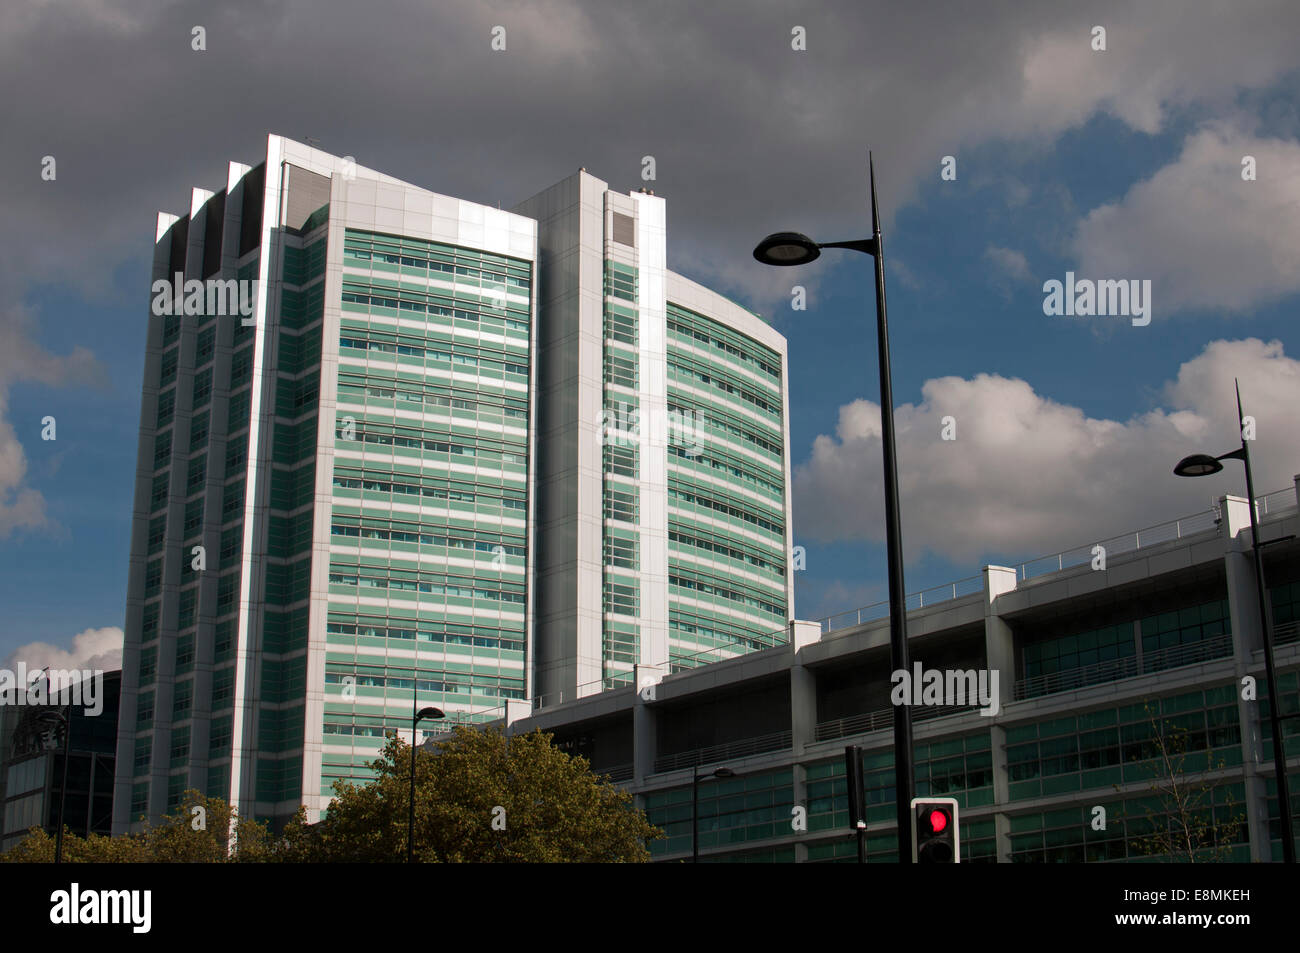 University College Hospital, Londres, Royaume-Uni Banque D'Images